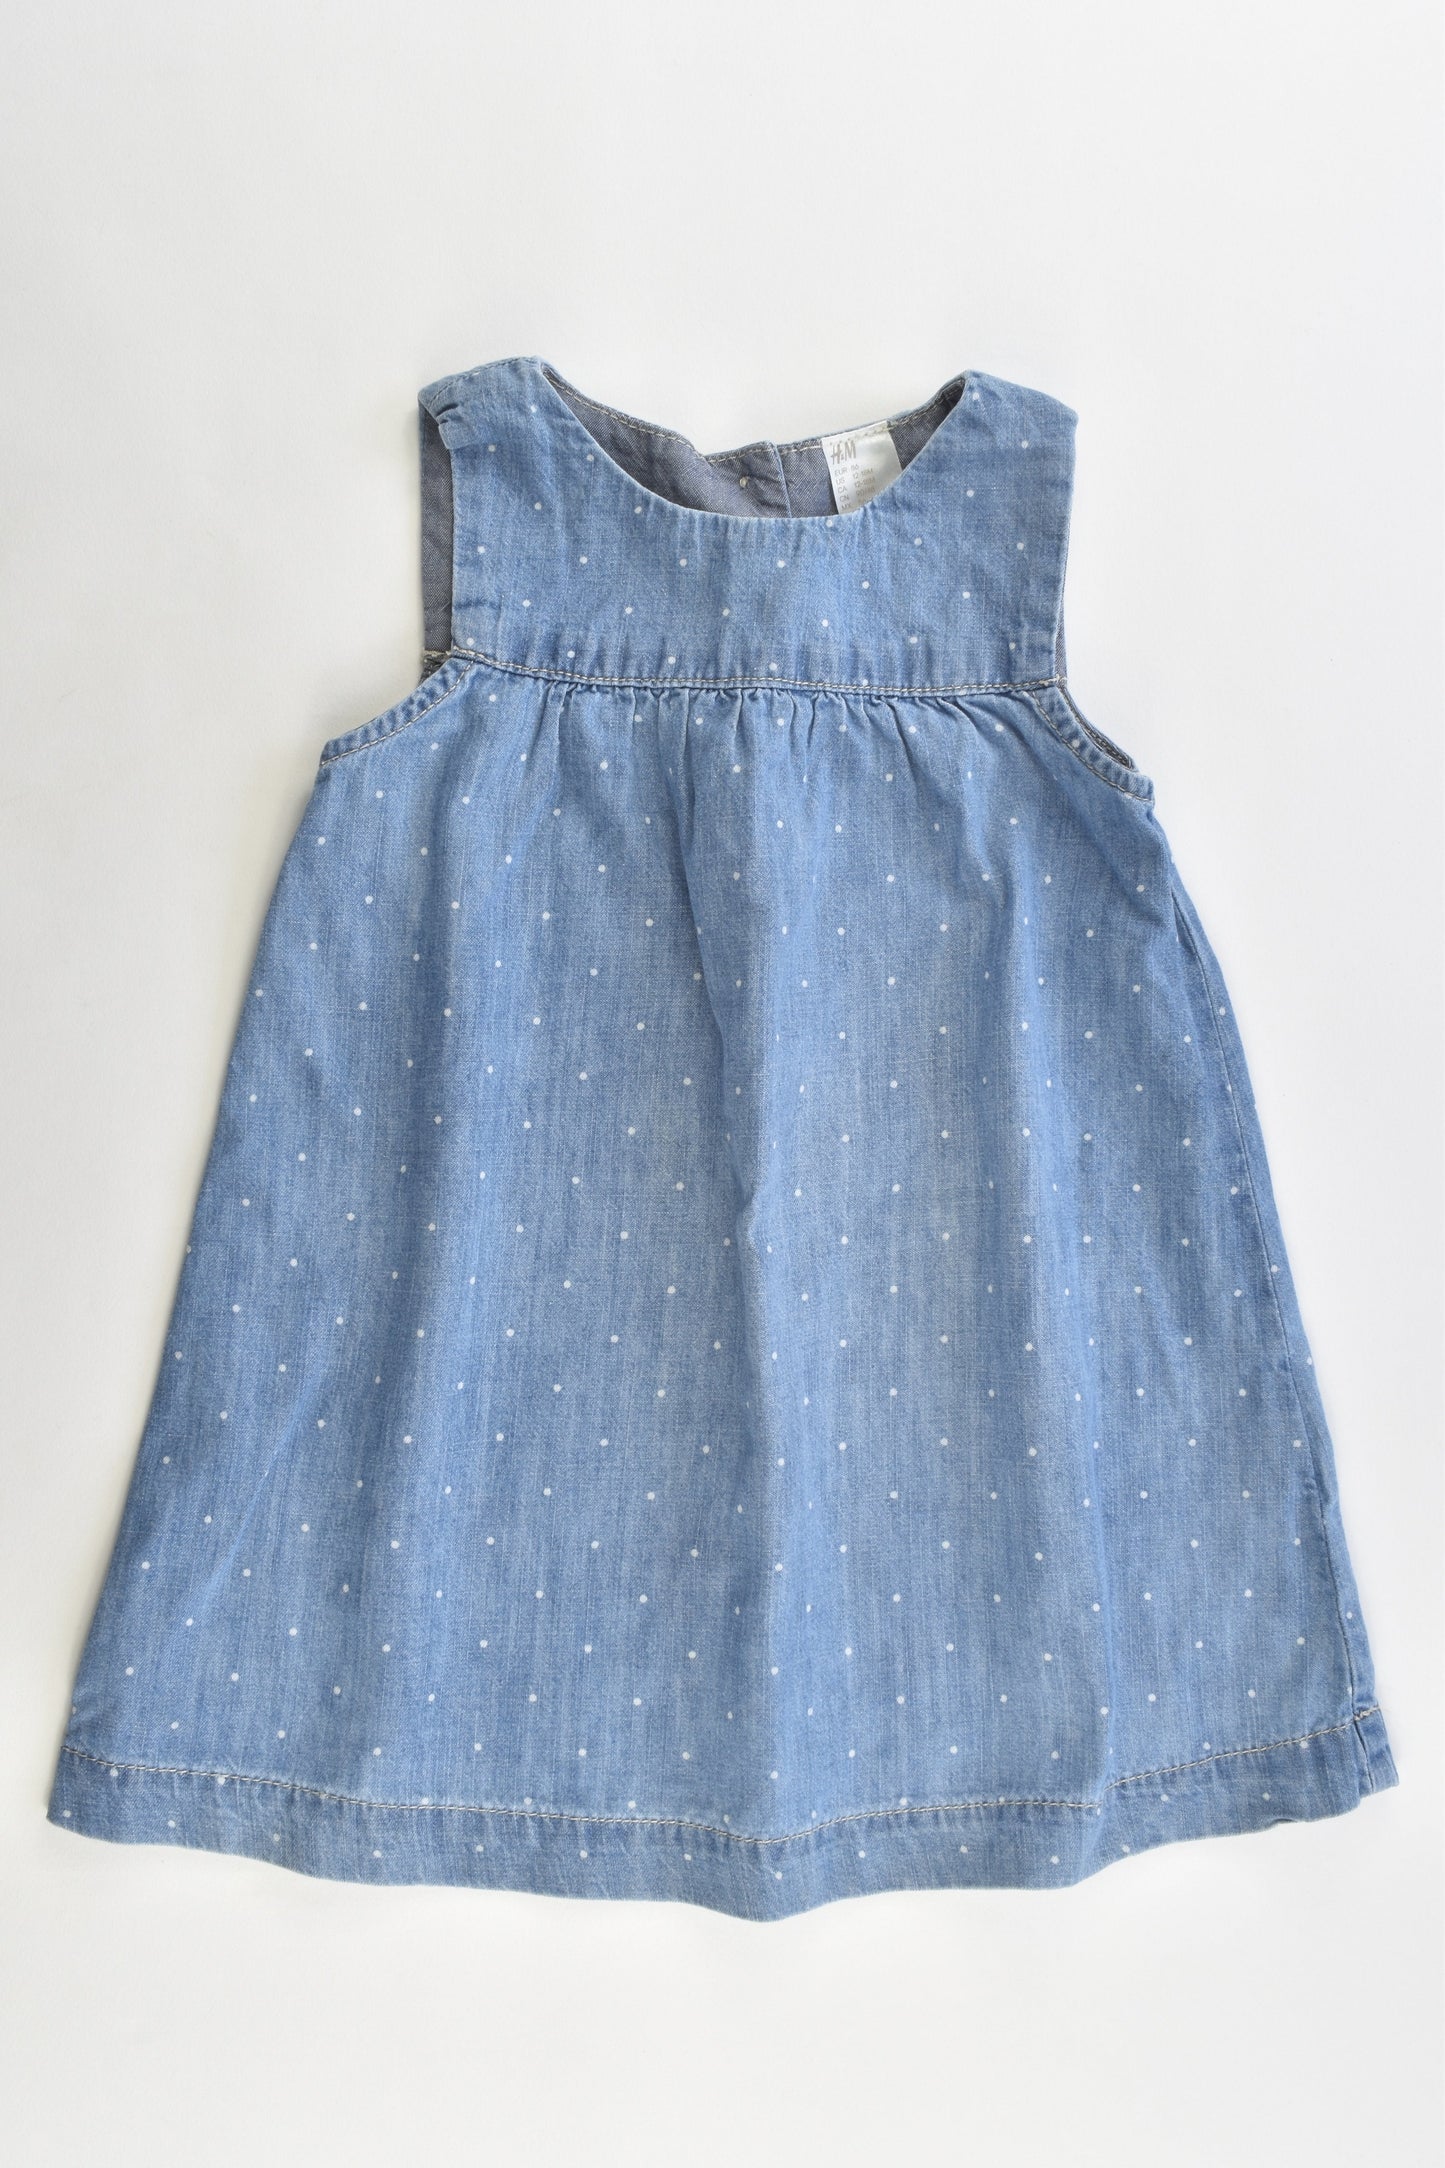 H&M Size 12-18 months (1.5 years) Soft Denim Dress